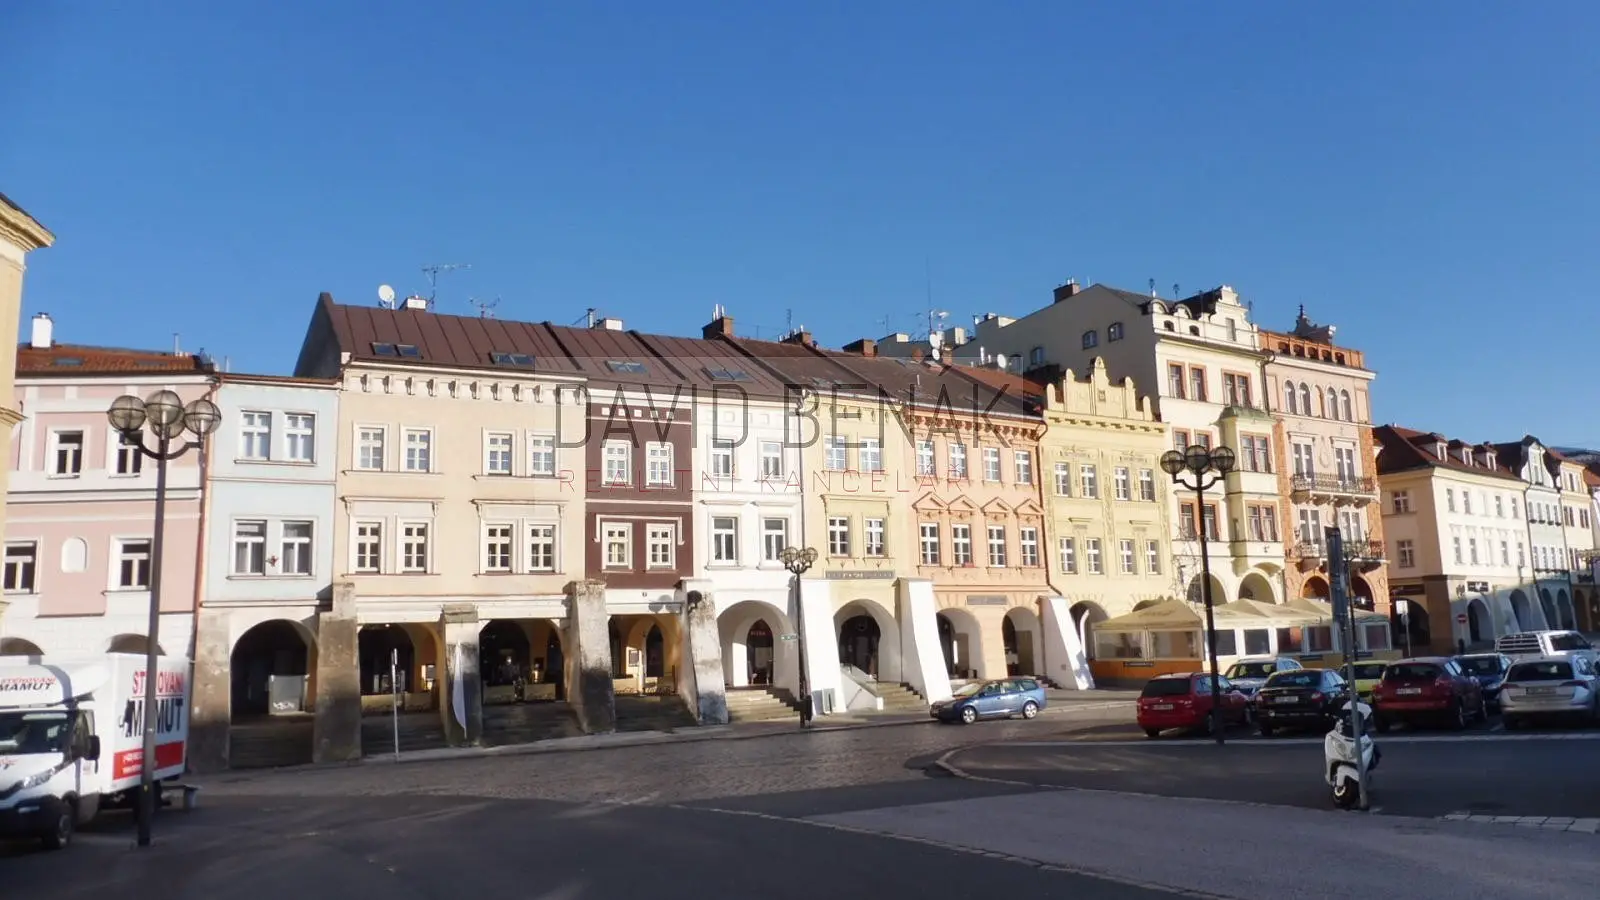 Velké náměstí, Hradec Králové